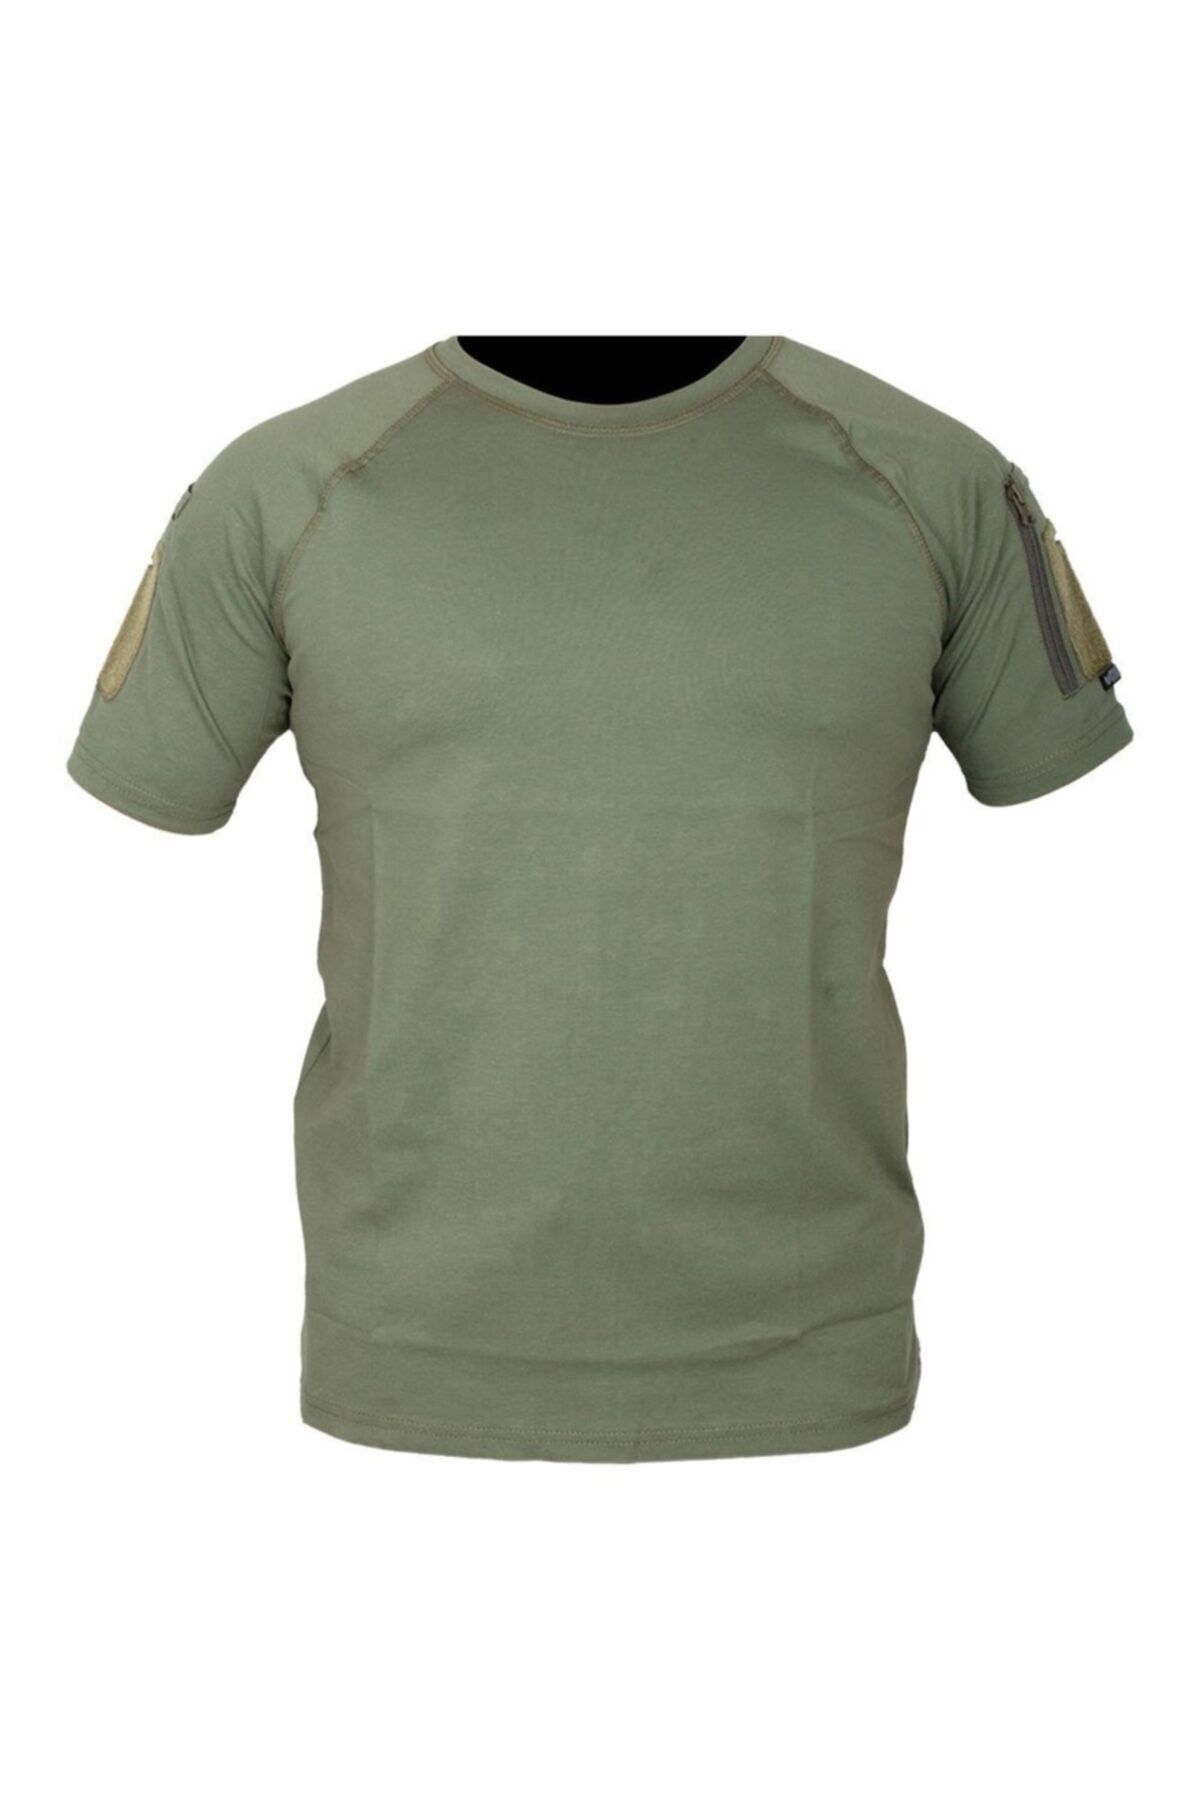 Safari Avm Taktikal Haki Rengi Combat Tişört